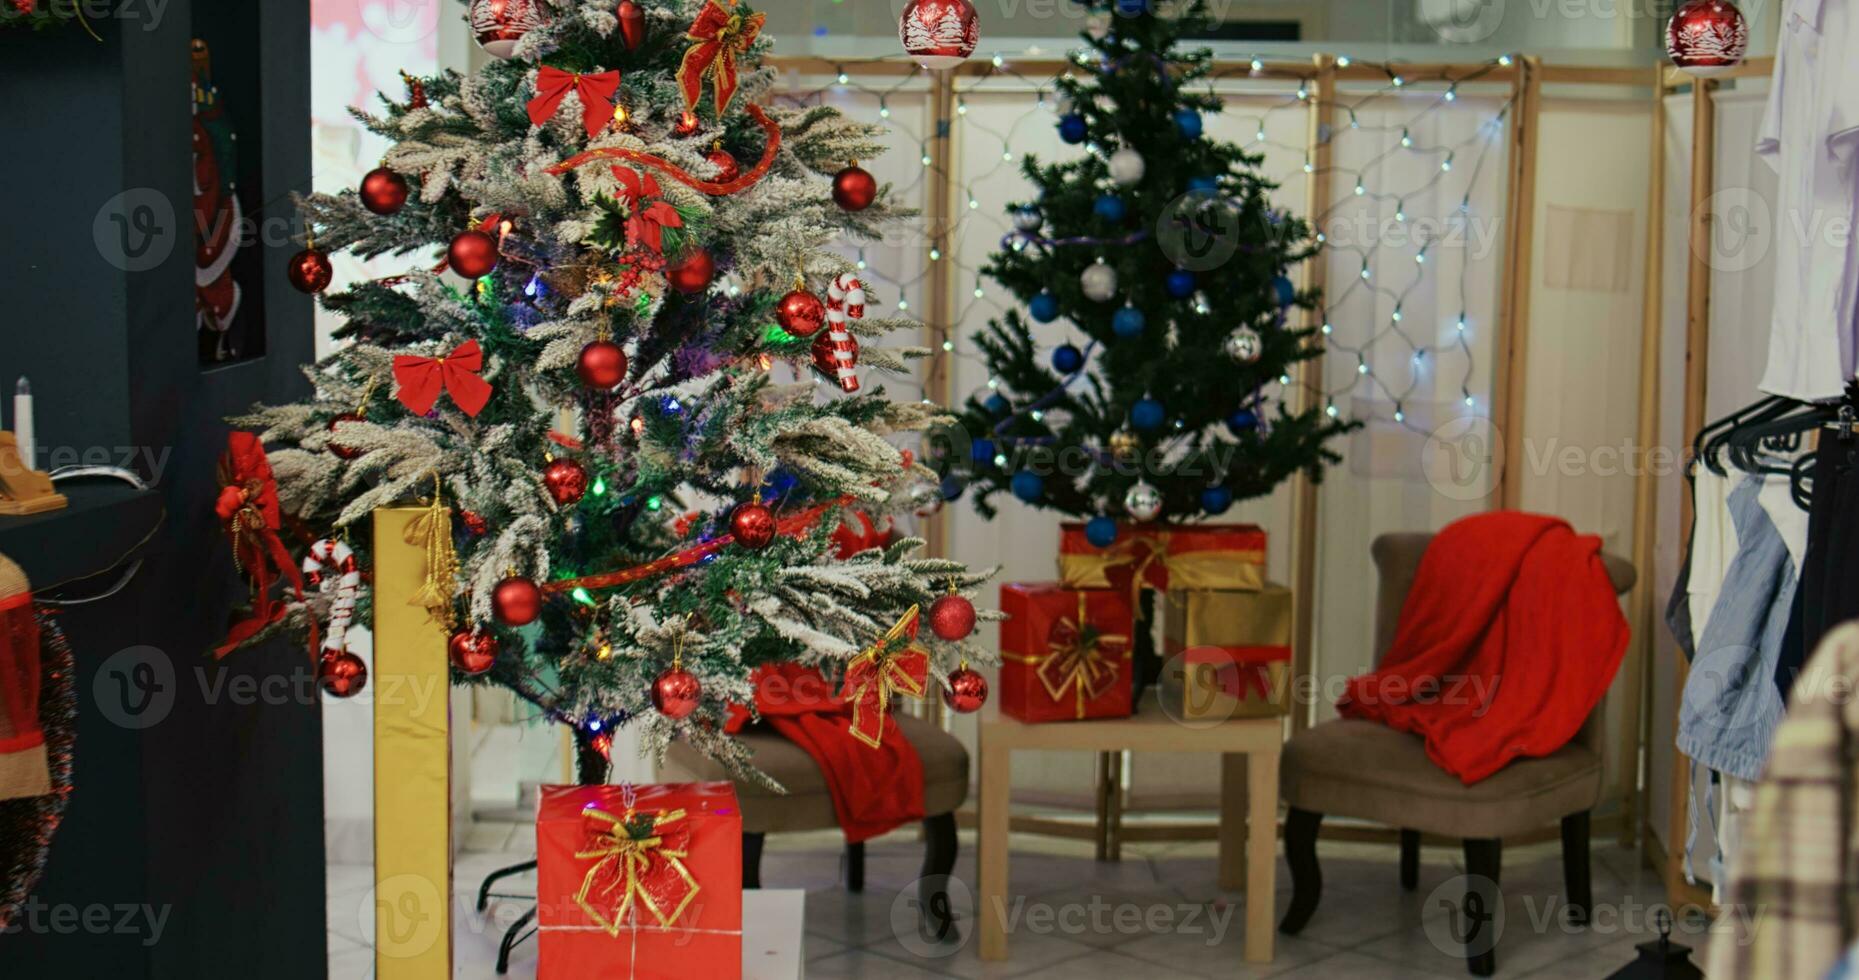 chariot dans coup de de fête Vêtements boutique rempli avec magnifiquement décoré Noël arbre, clinquant guirlandes, rouge paquet présente et autre ornements pendant hiver vacances saison photo